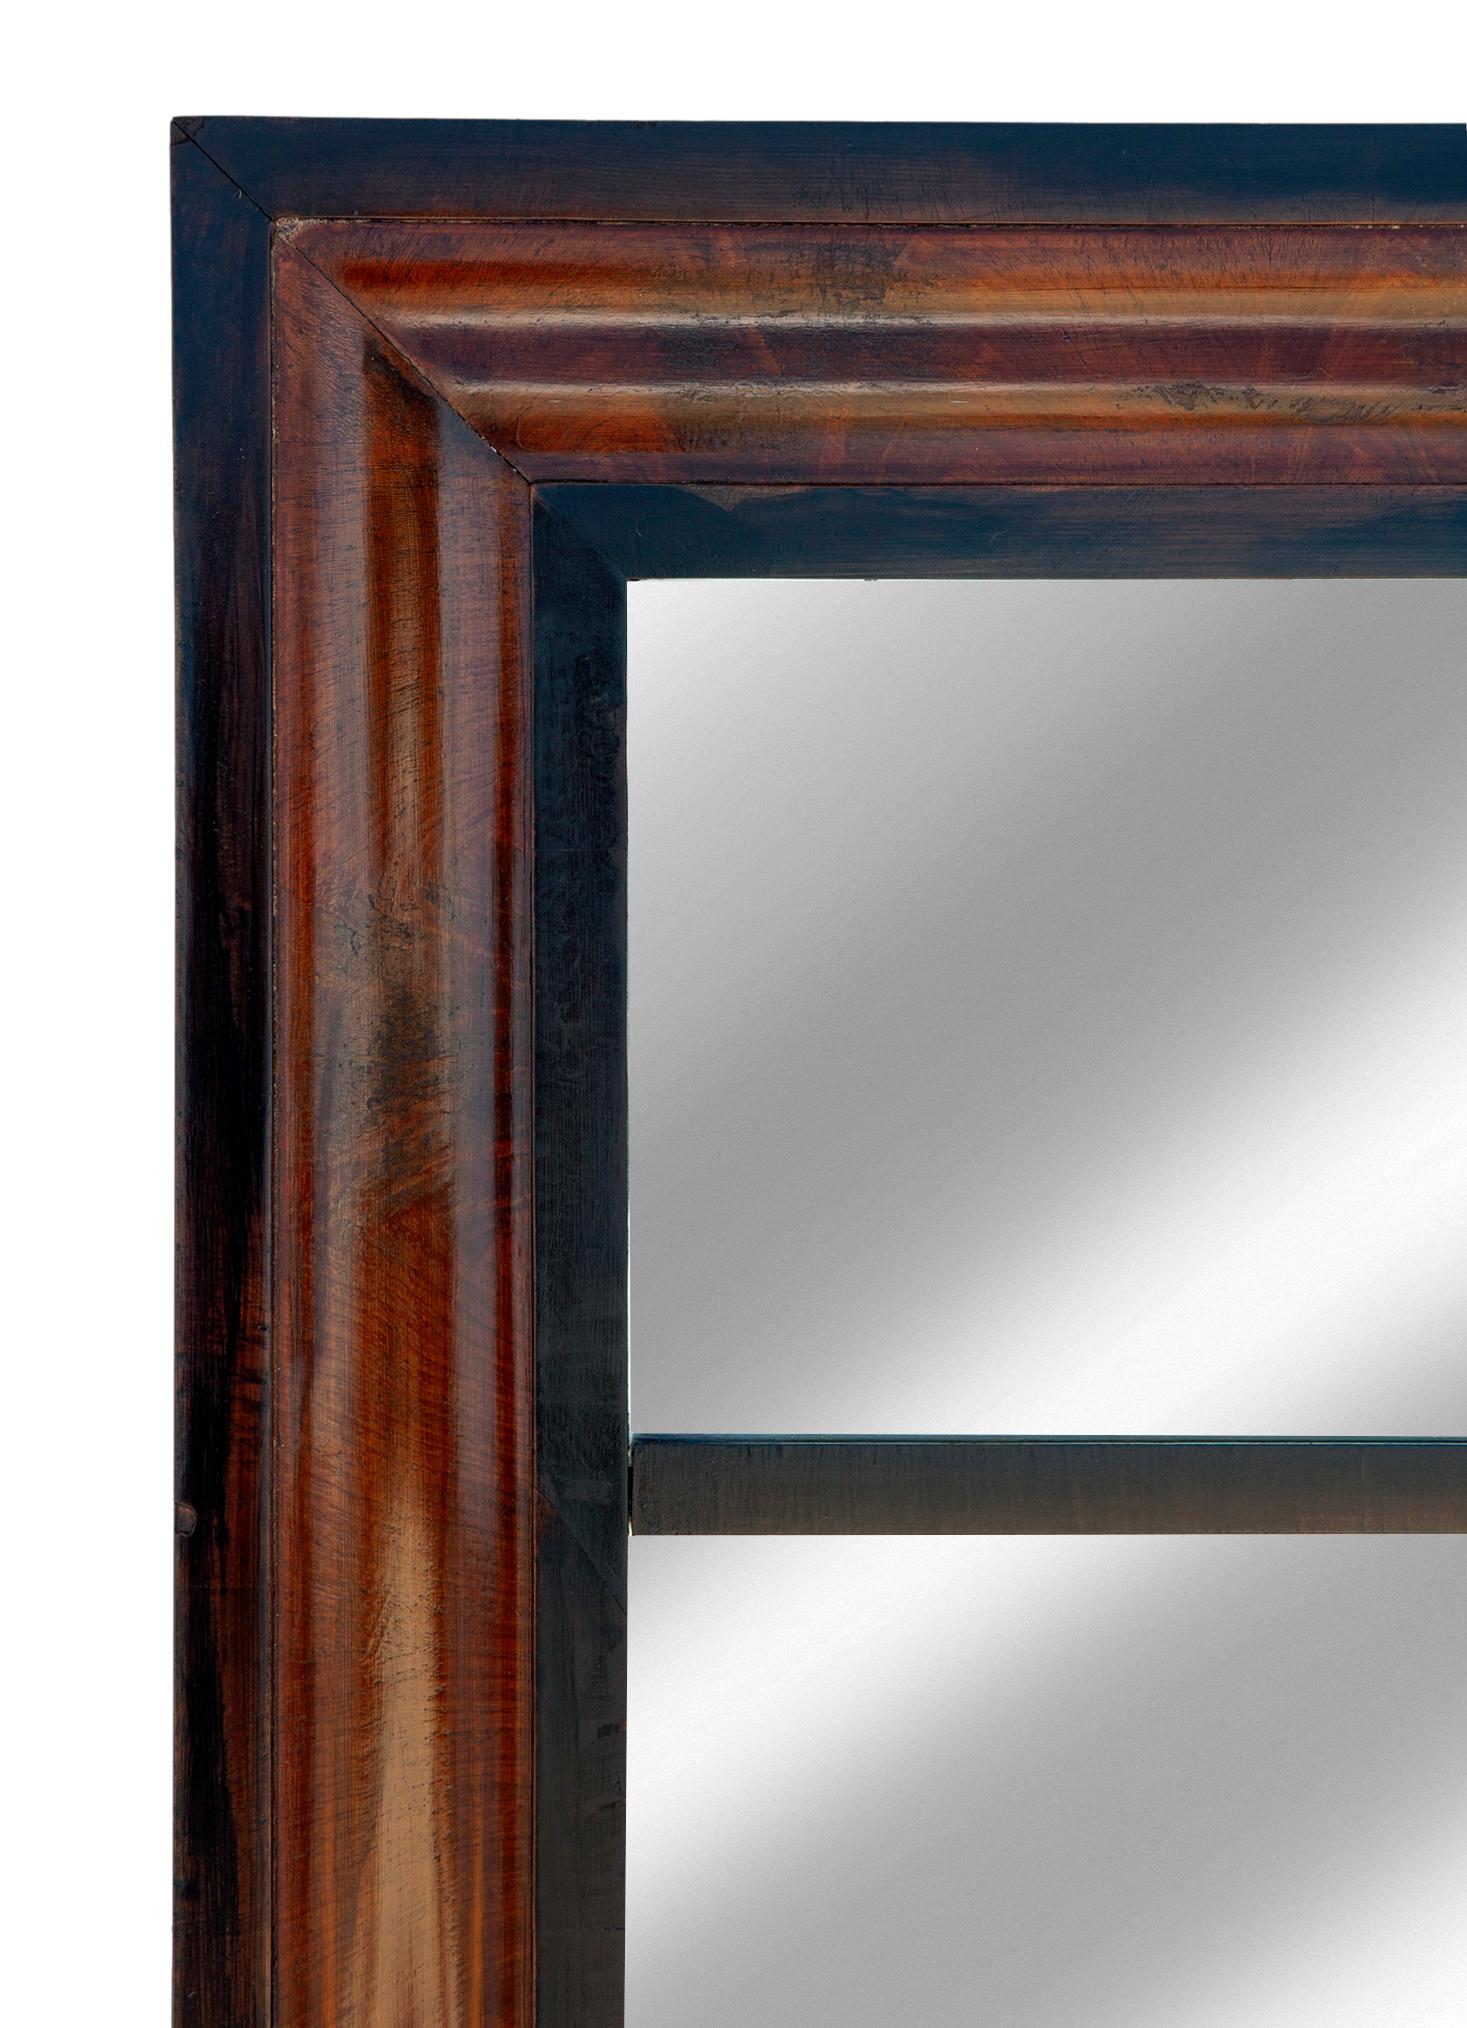 Empire-Mahagoni-Trumeau-Spiegel aus geflammtem Mahagoni, um das frühe 19. 
Restauriert in Ebenholz und poliertem Mahagoni. Klassischer, traditioneller Empire-Stil, mit verspiegelten Scheiben oben und unten. Die ursprüngliche Holzunterlage ist